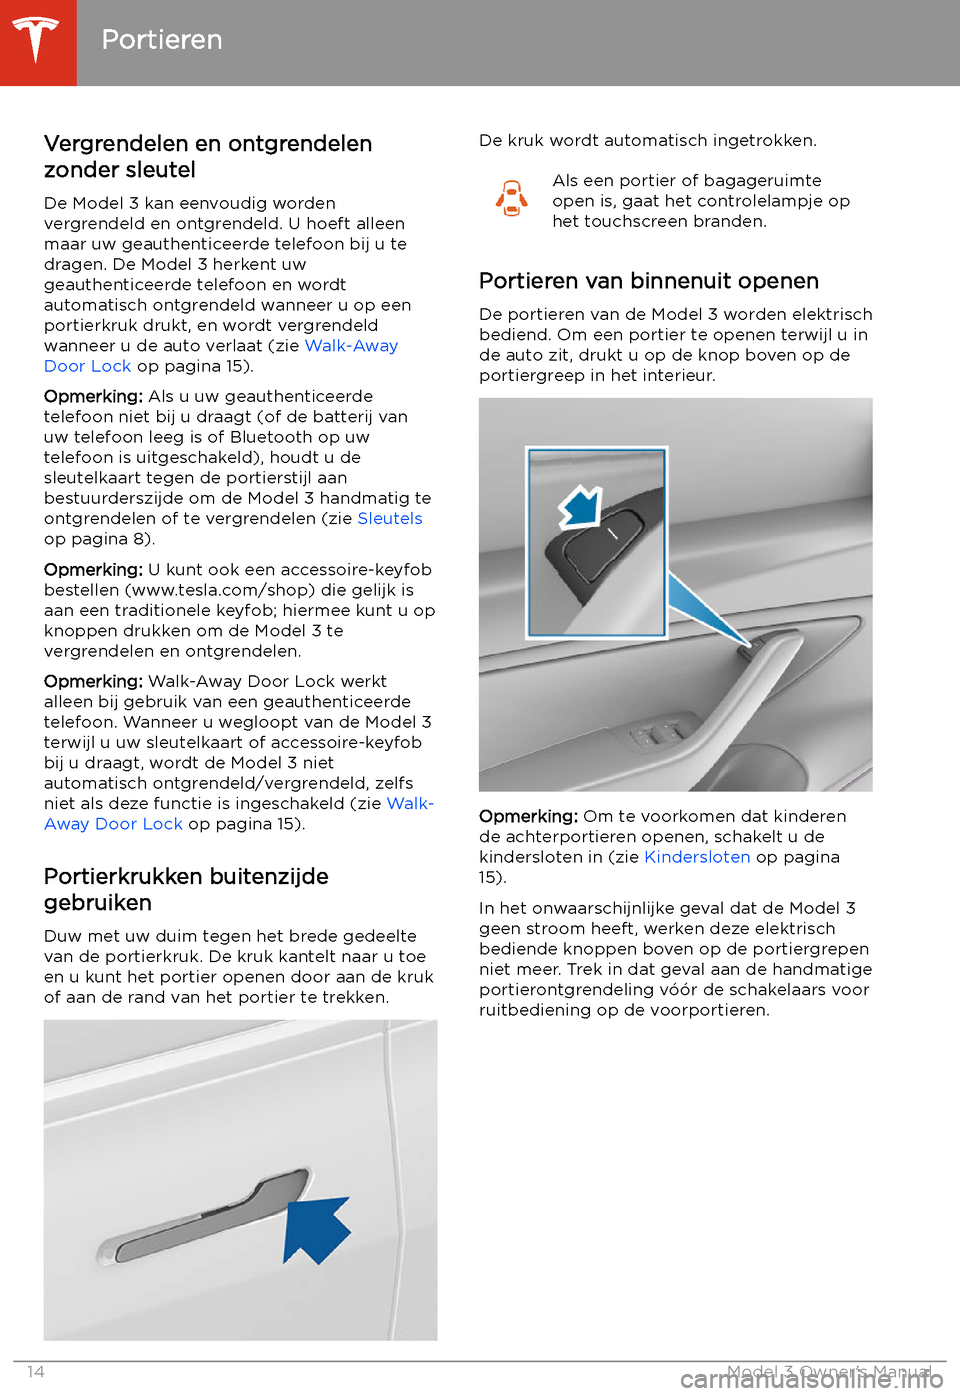 TESLA MODEL 3 2019  Handleiding (in Dutch) Portieren
Vergrendelen en ontgrendelen
zonder sleutel
De Model 3 kan eenvoudig worden
vergrendeld en ontgrendeld. U hoeft alleen maar uw geauthenticeerde telefoon bij u te
dragen. De Model 3 herkent u